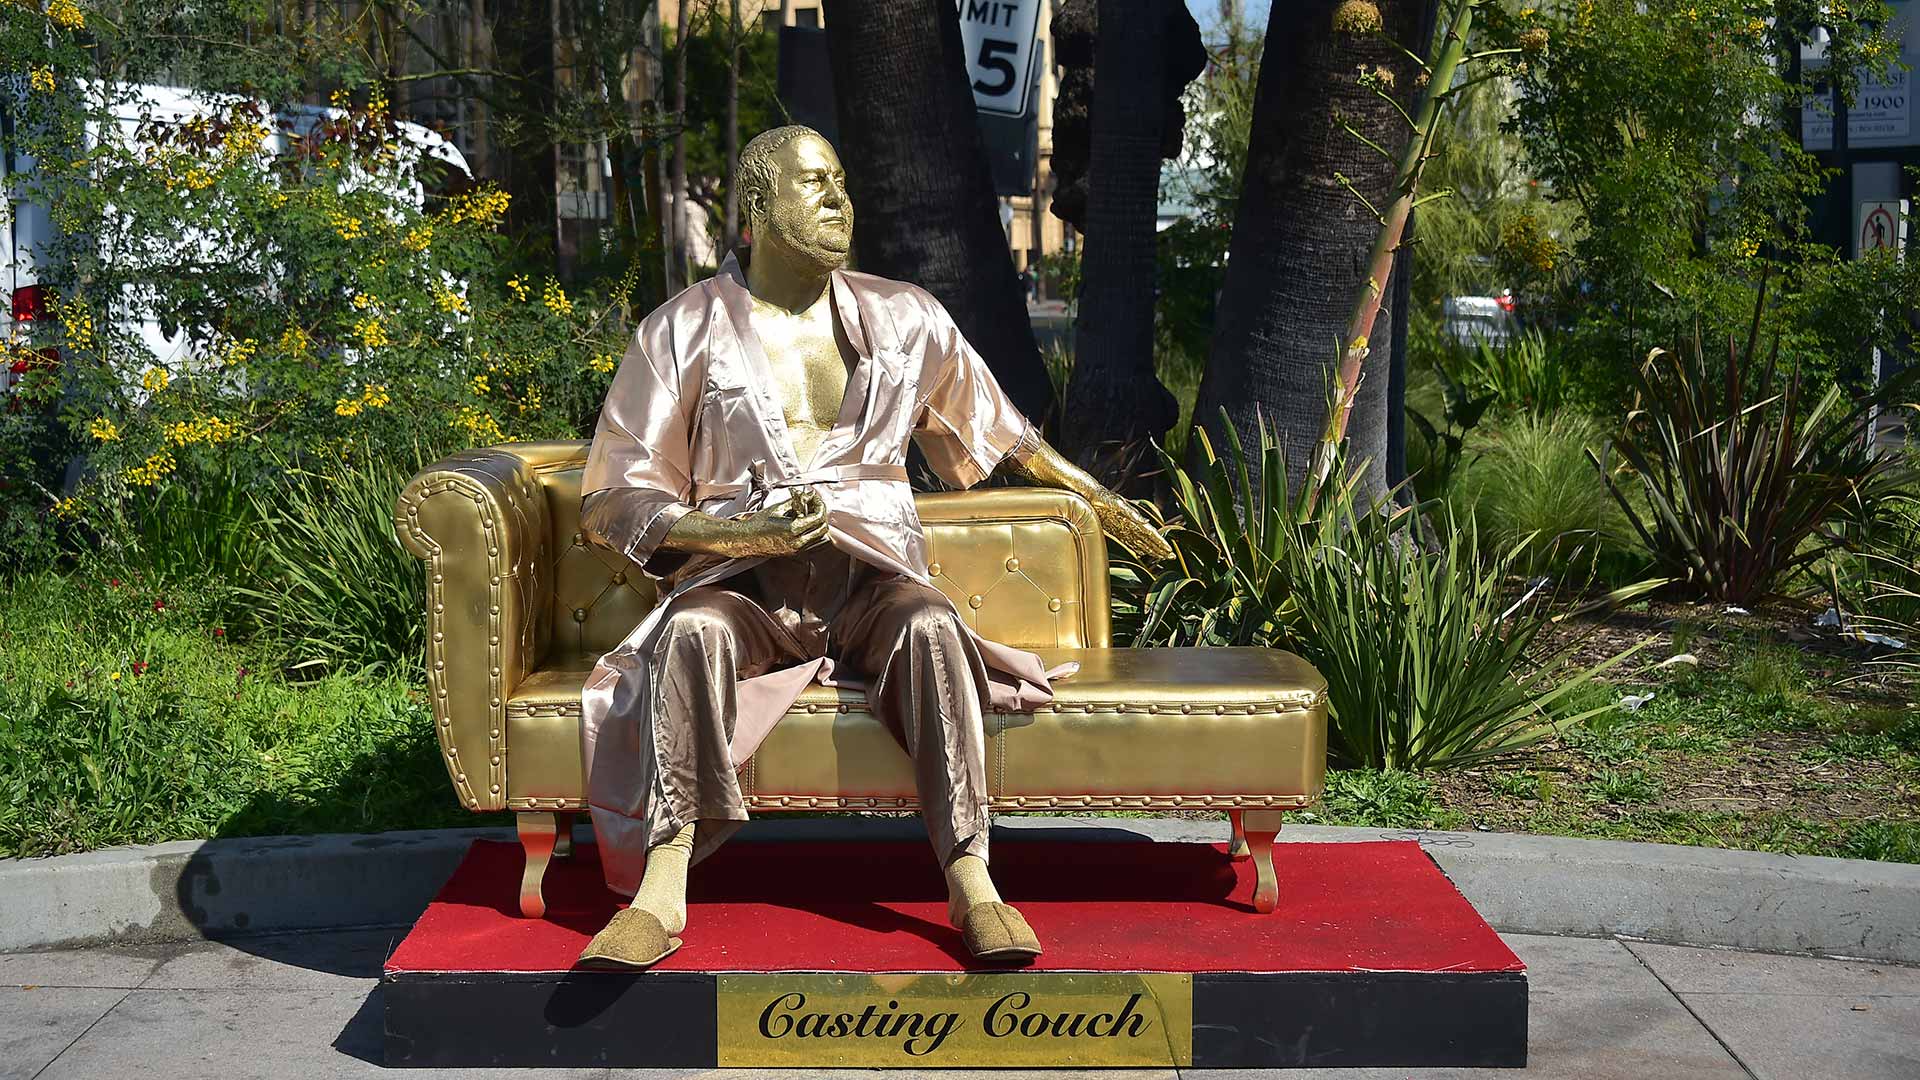 El "monstruo" en el sofá, una escultura crítica de Weinstein se expone en Hollywood